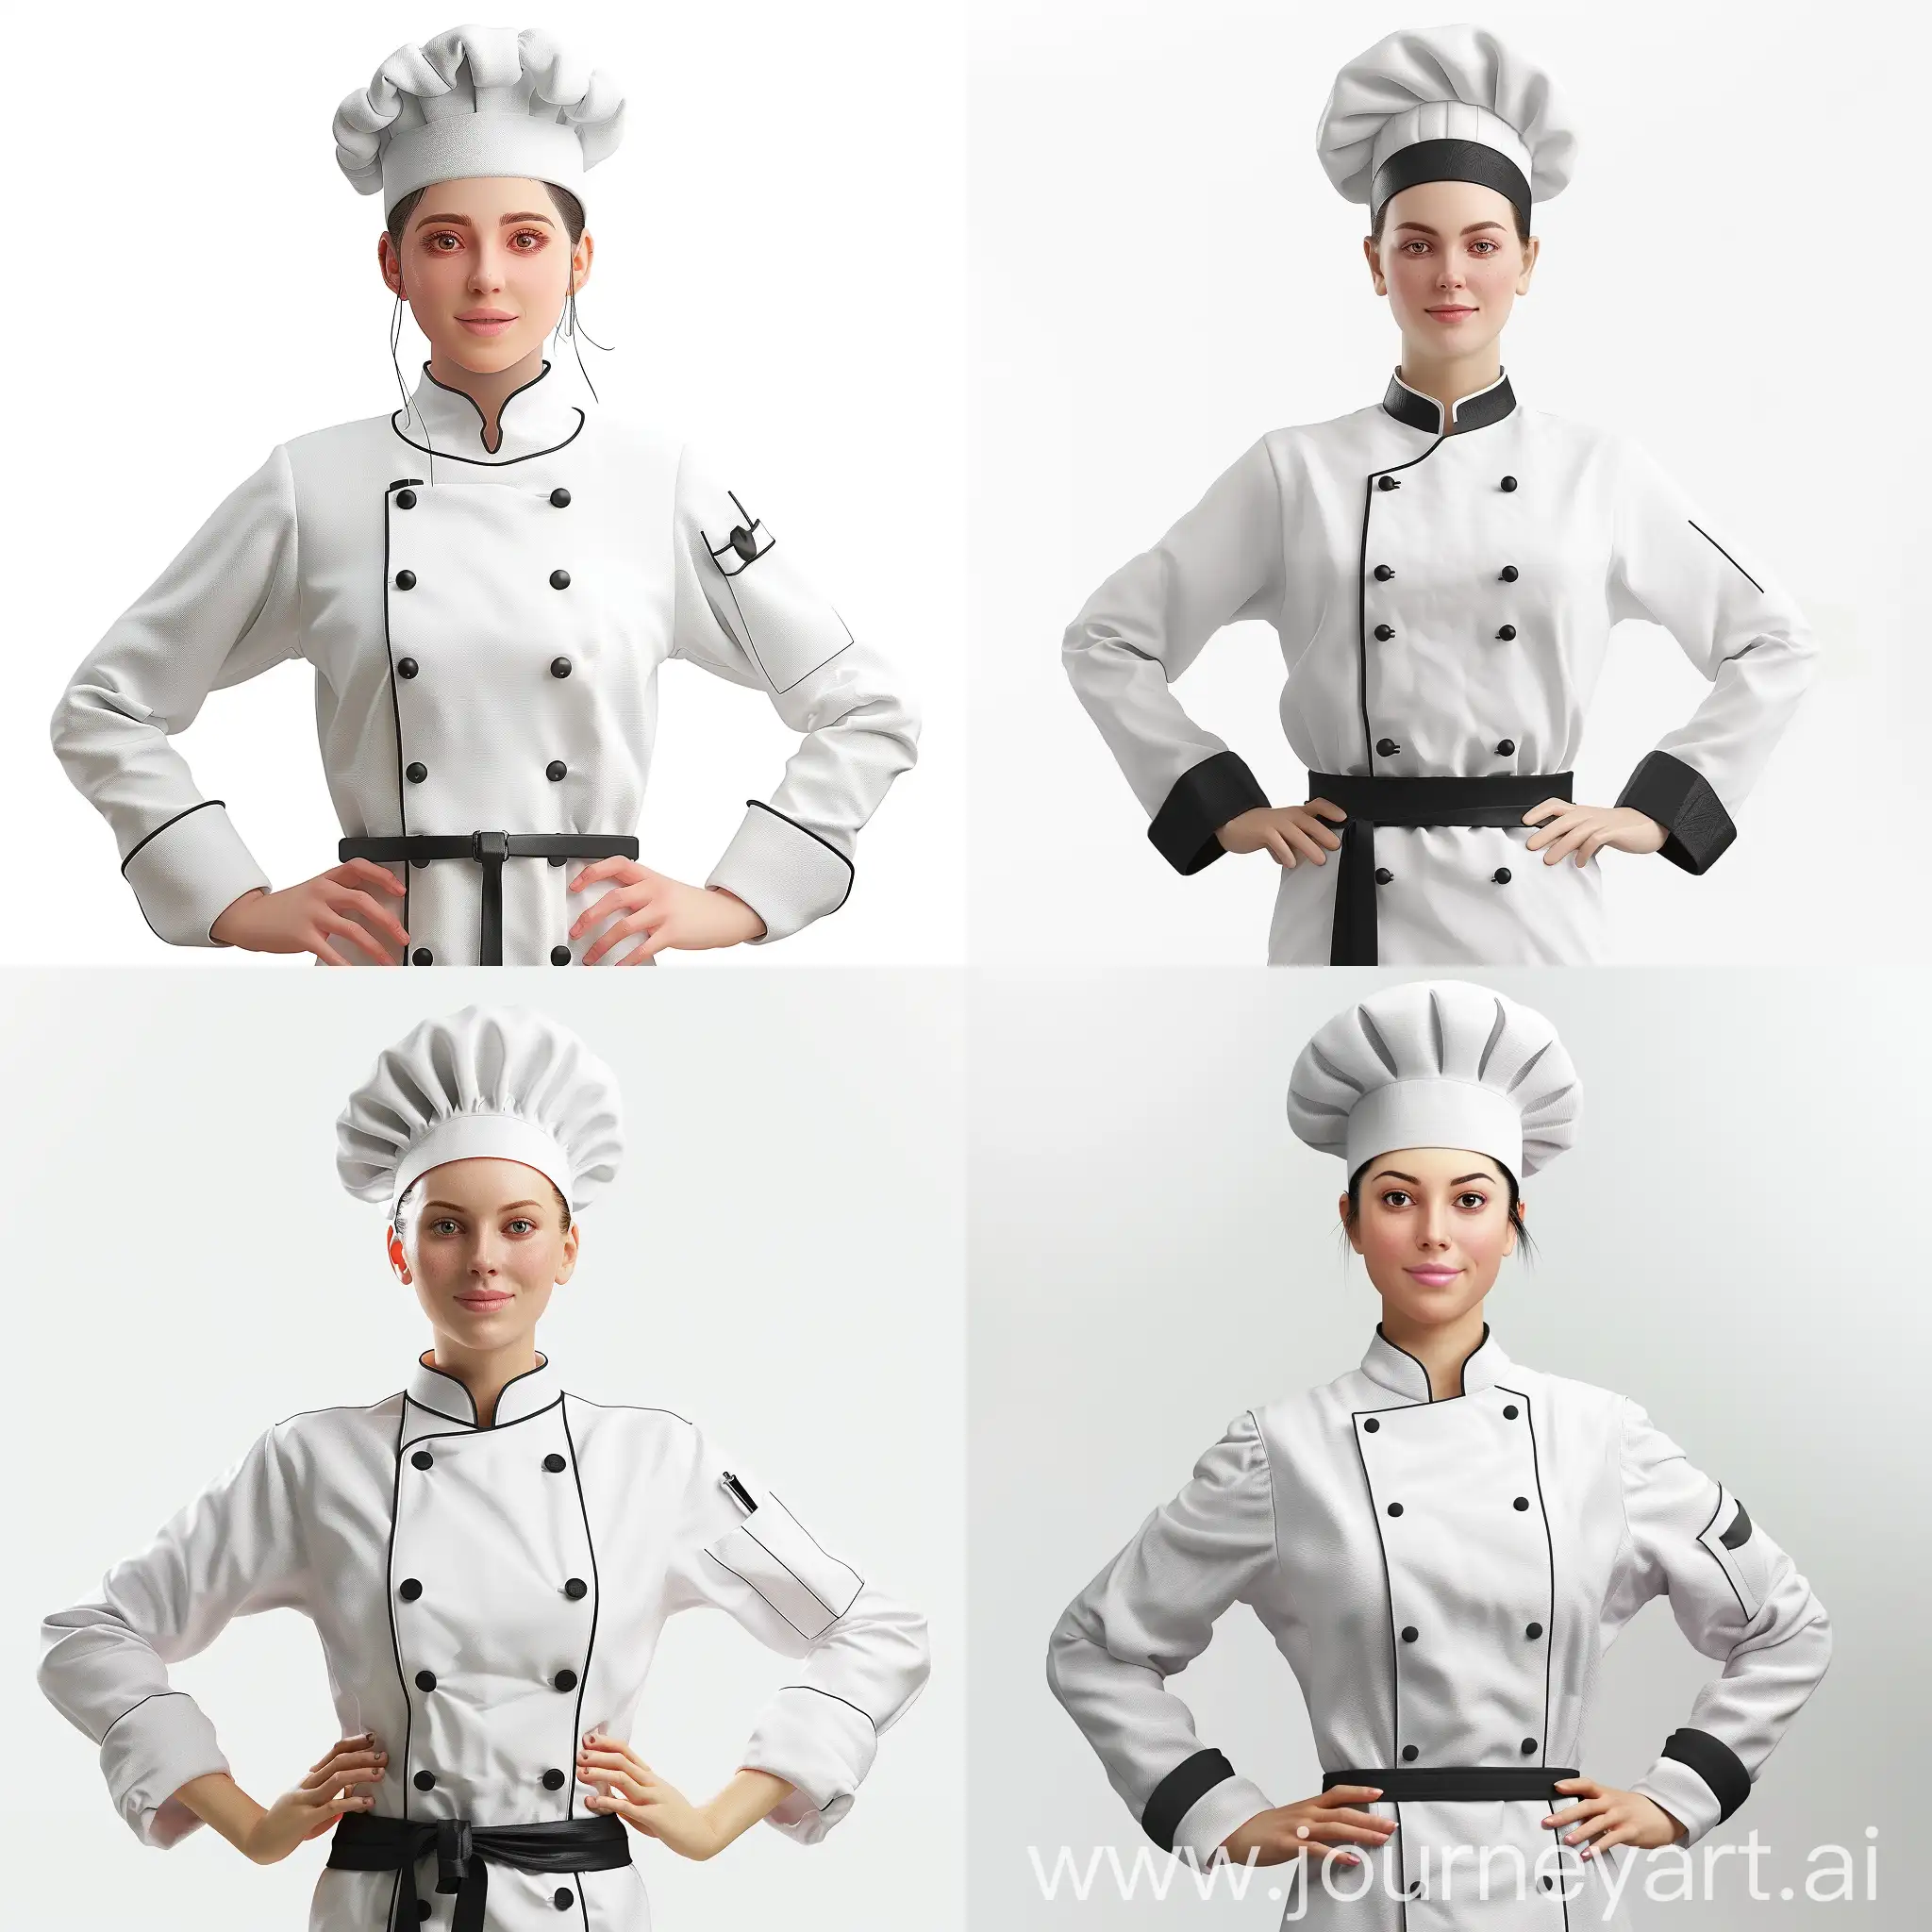 Professional-Female-Chef-Portrait-in-Traditional-Chef-Attire